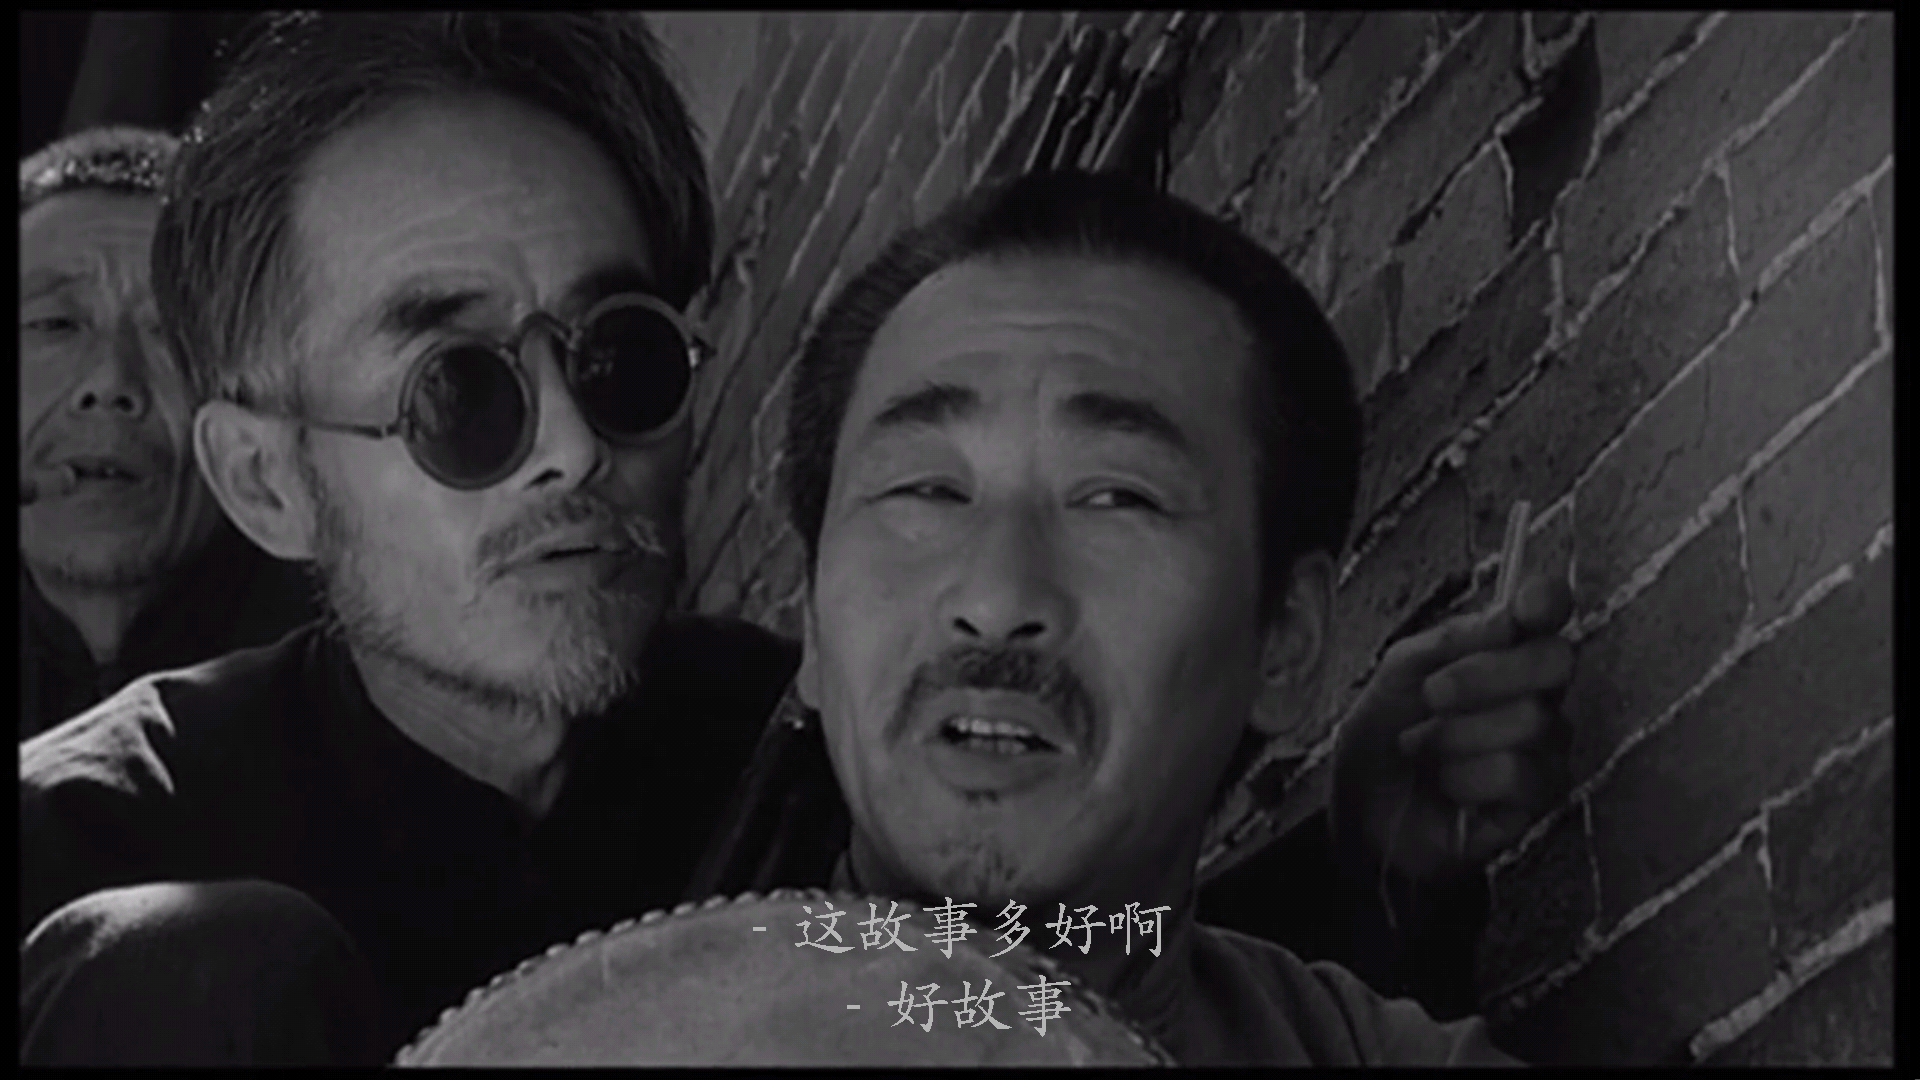 还记得《鬼子来了》的结尾处,姜文饰演的马大三为给被日军残杀的